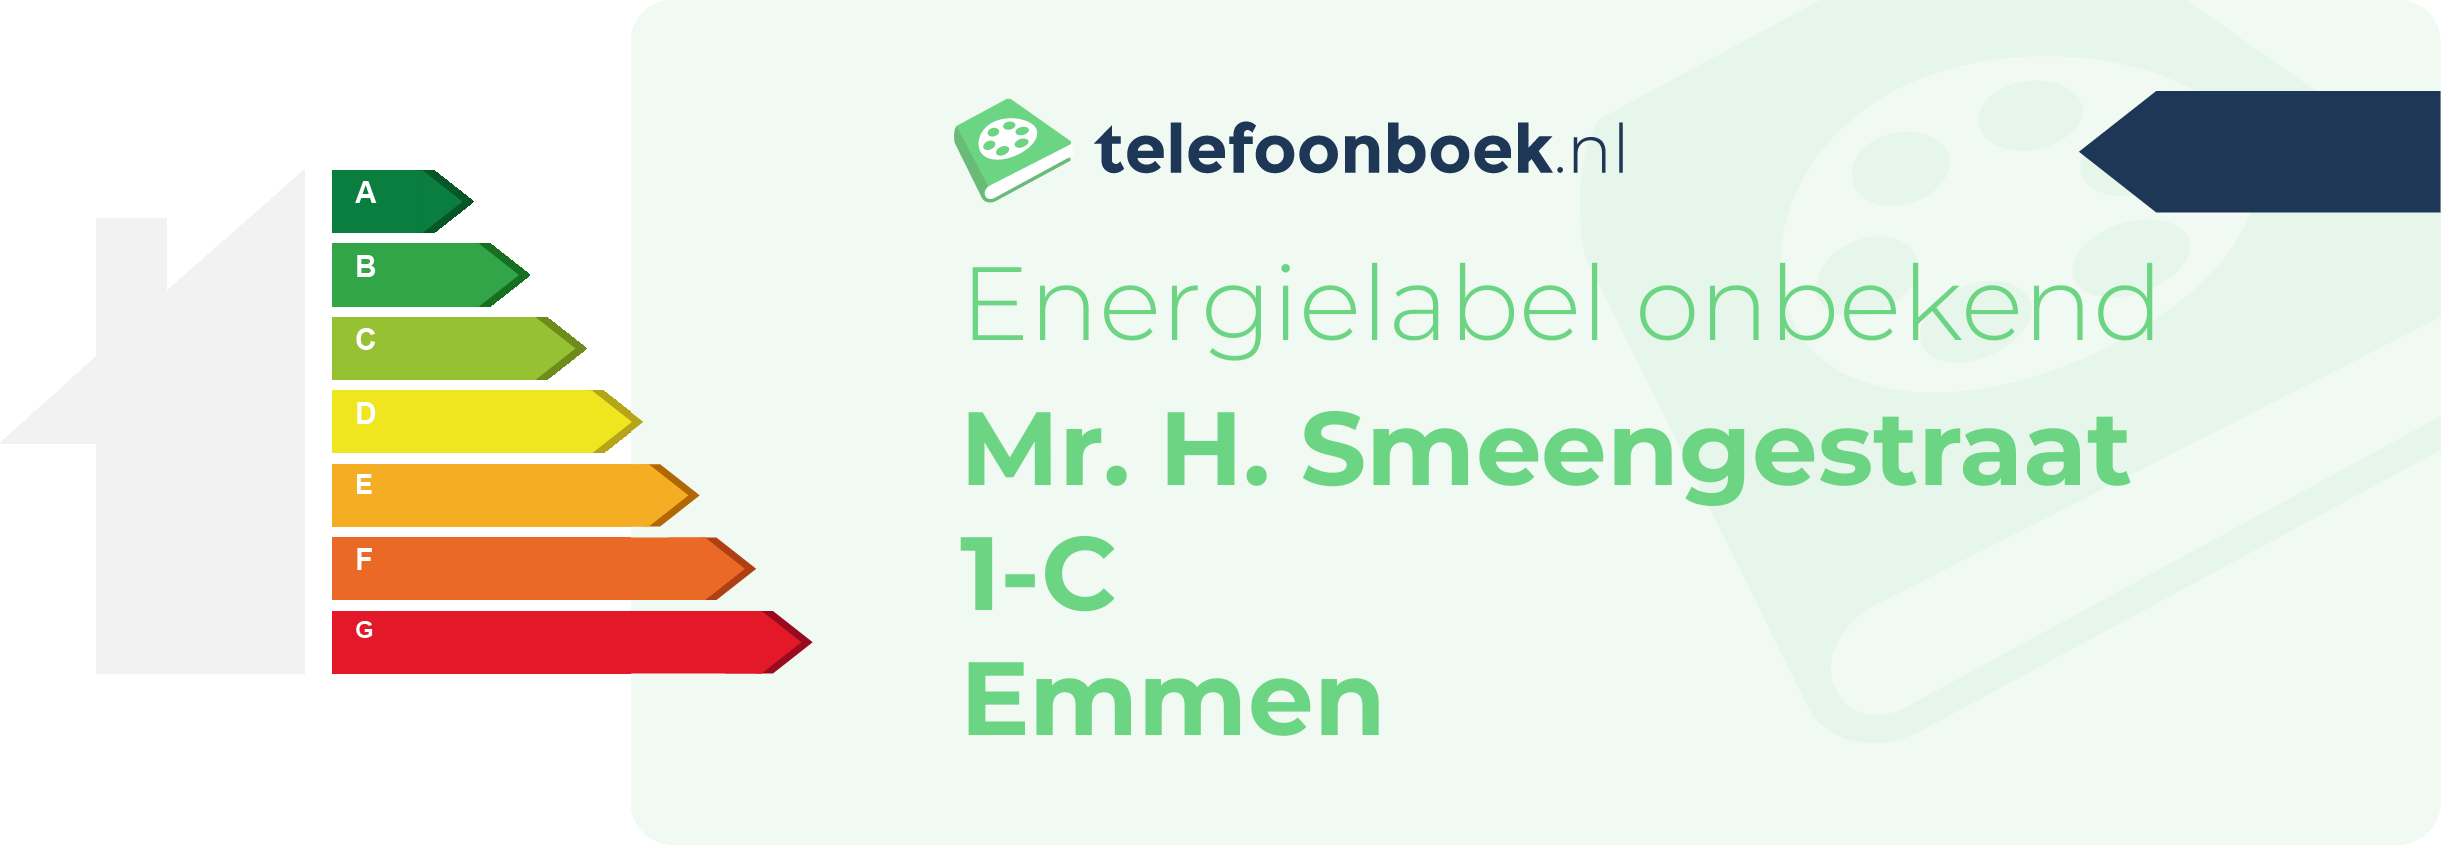 Energielabel Mr. H. Smeengestraat 1-C Emmen